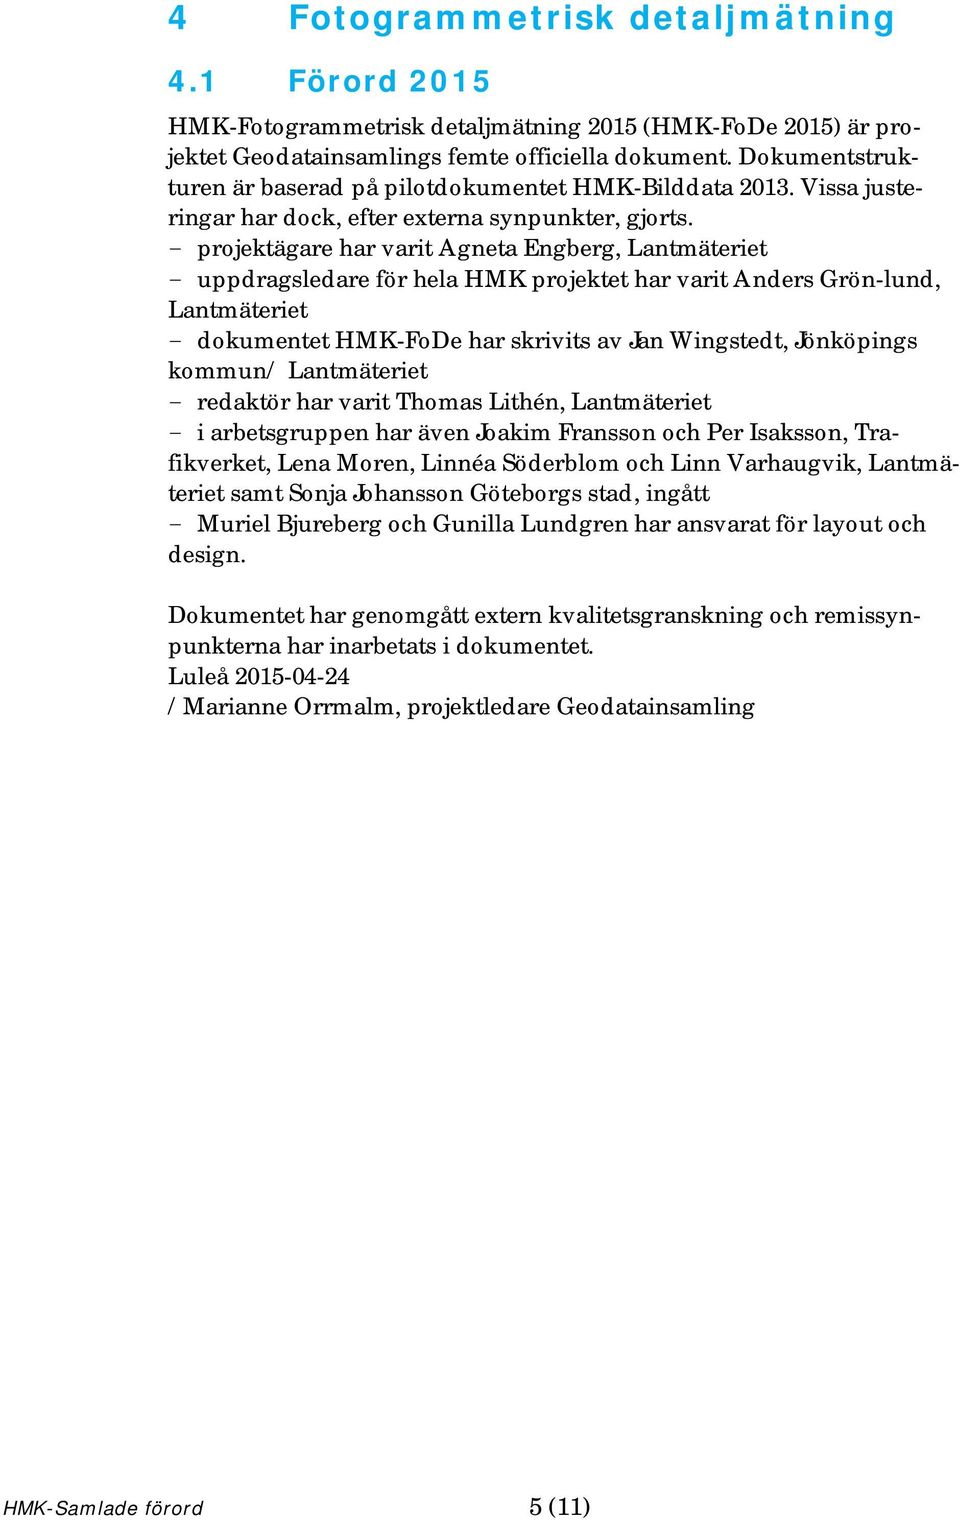 - projektägare har varit Agneta Engberg, Lantmäteriet - uppdragsledare för hela HMK projektet har varit Anders Grön-lund, Lantmäteriet - dokumentet HMK-FoDe har skrivits av Jan Wingstedt, Jönköpings